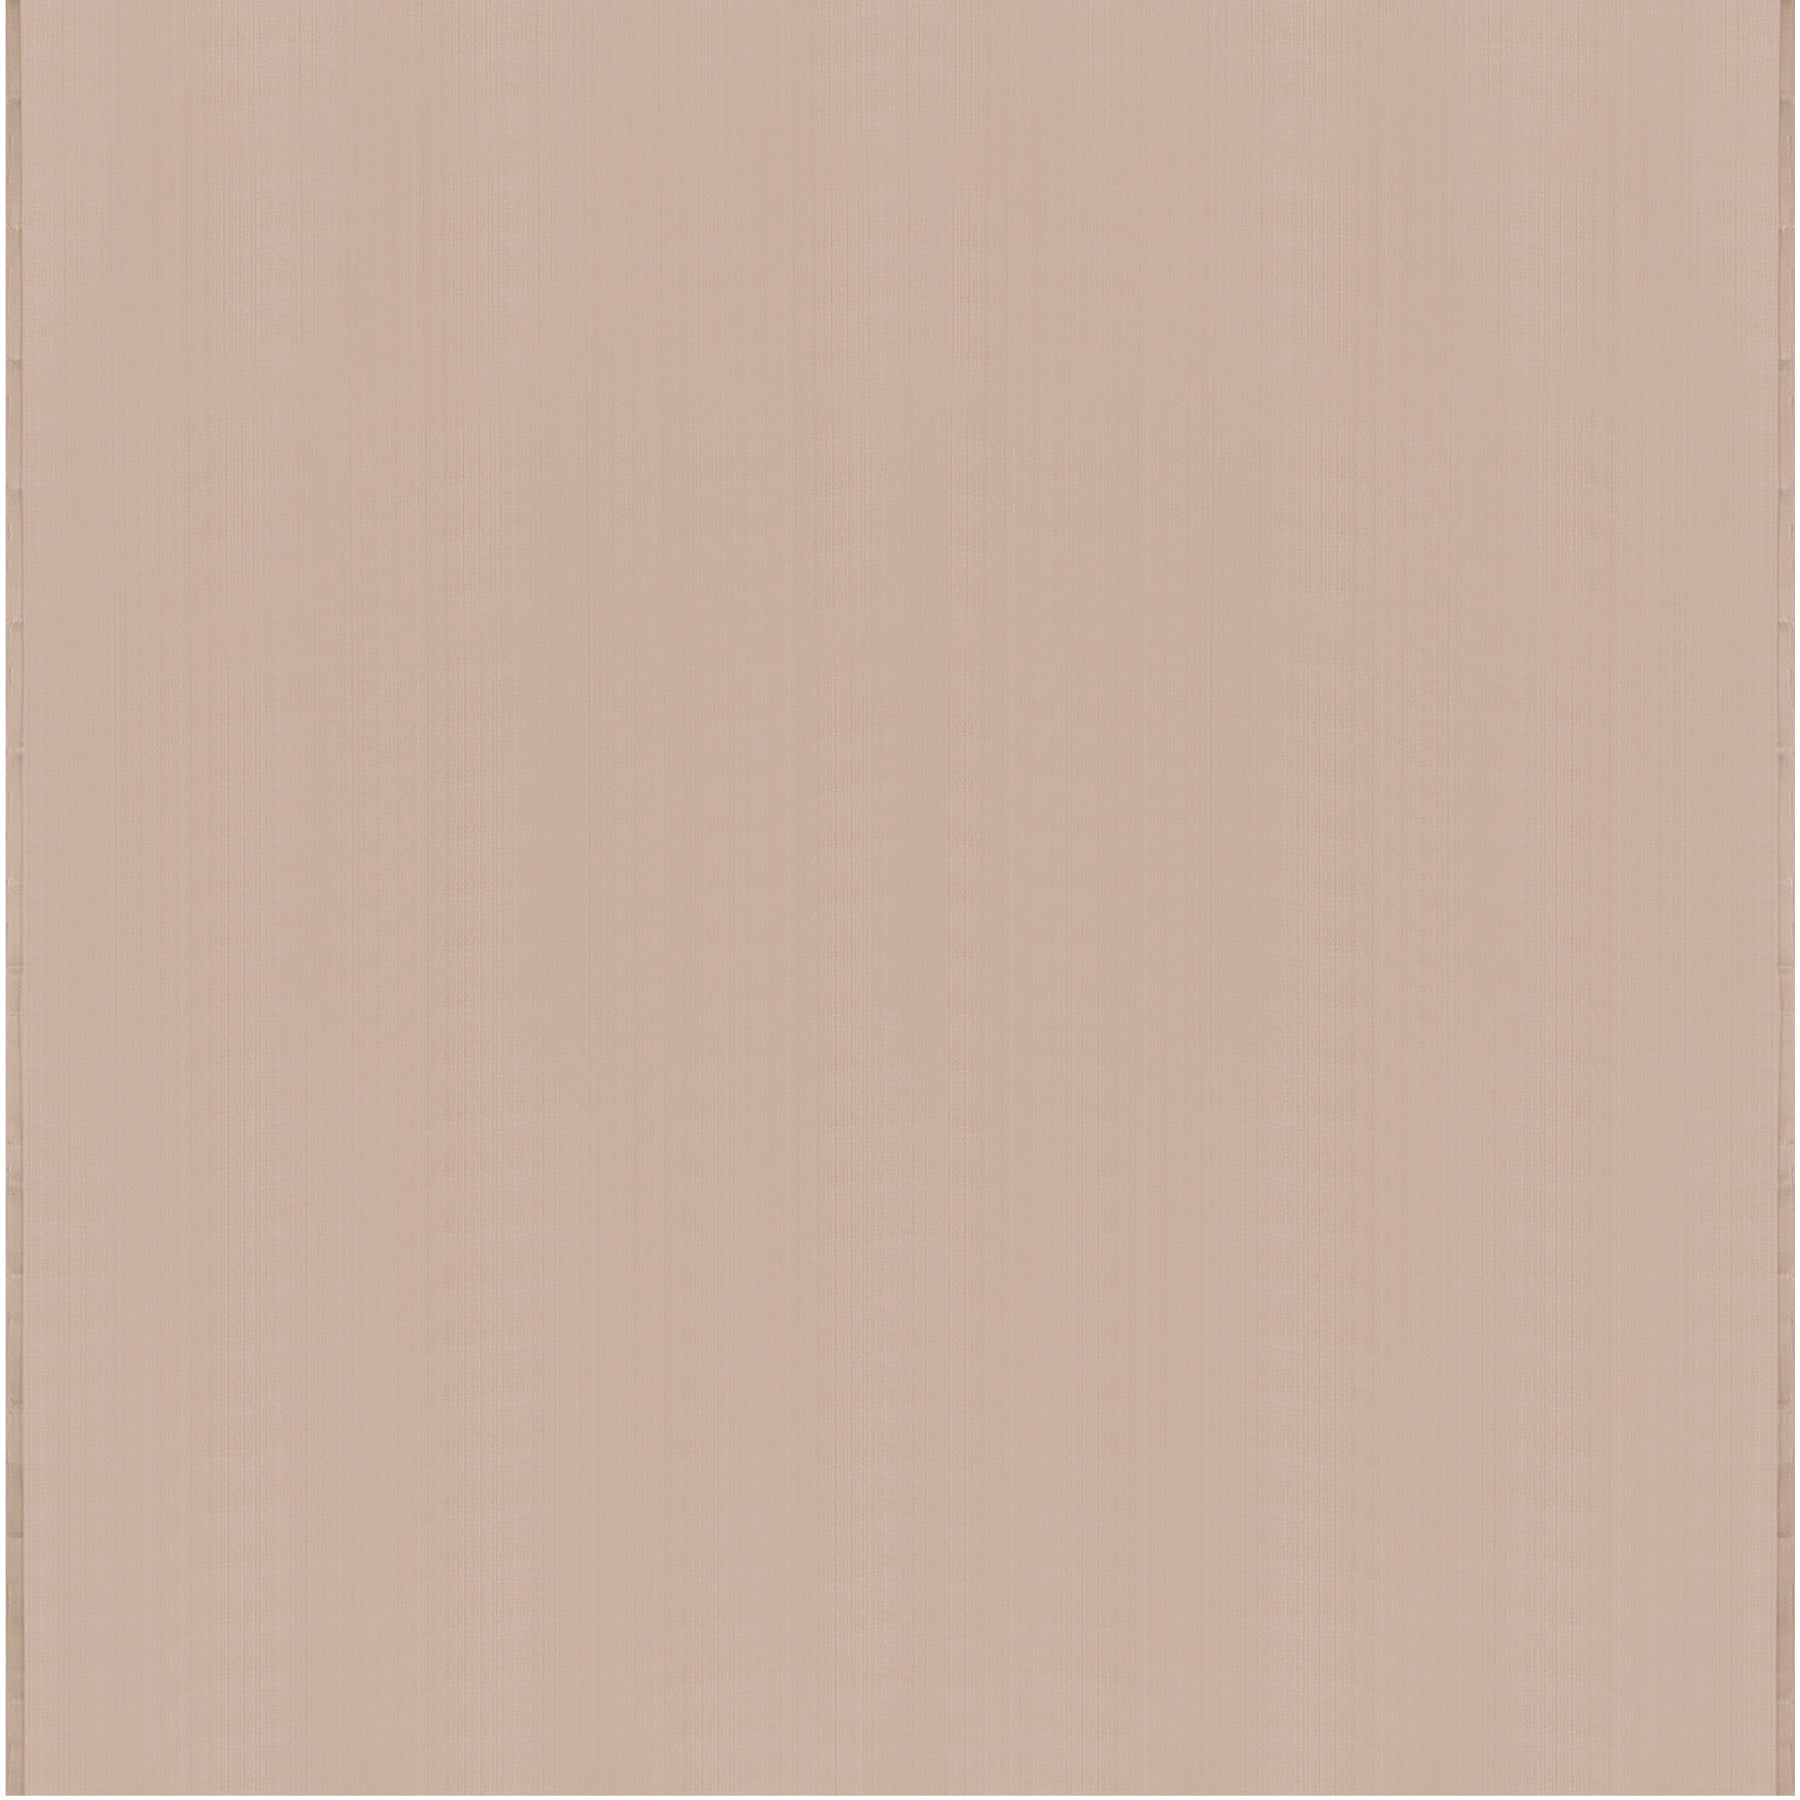 Kanakavalli Kanjivaram Silk Fabric Length 23-110-HF001-10080 - Full View